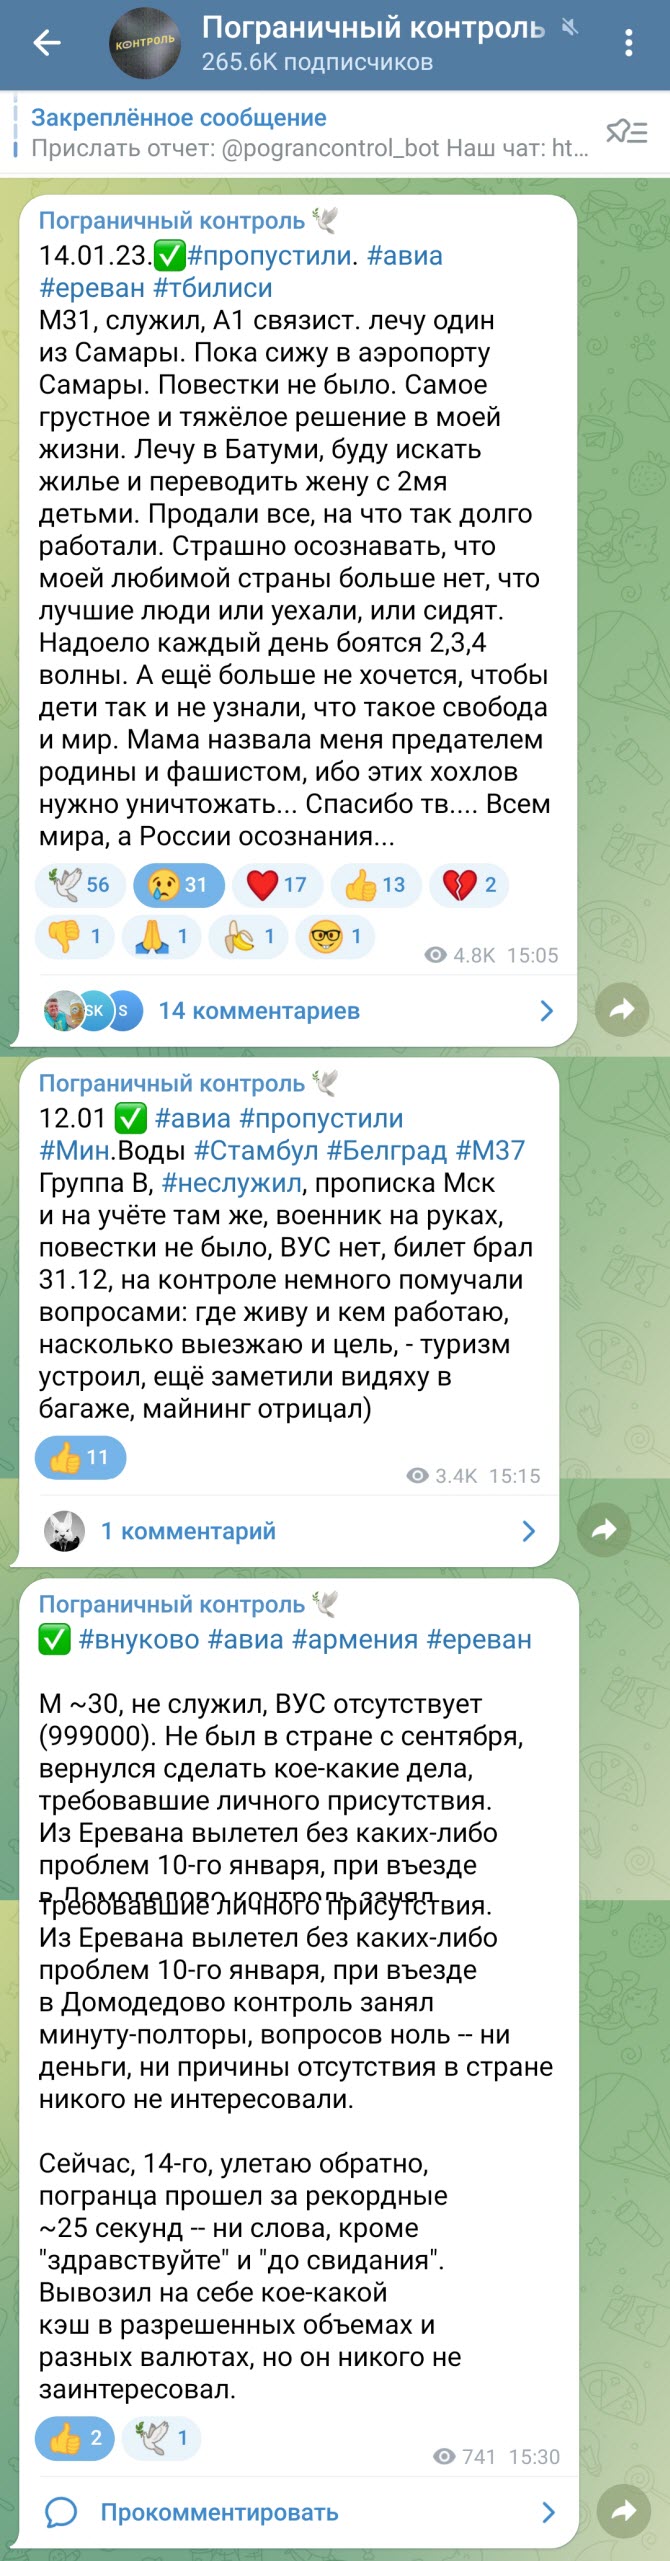  Избежать мобилизации можно самым радикальным образом - свалив из России. Telegram-канал Пограничный контроль облегает мониторинг пересечения границы РФ военнообязанными мужчинами.